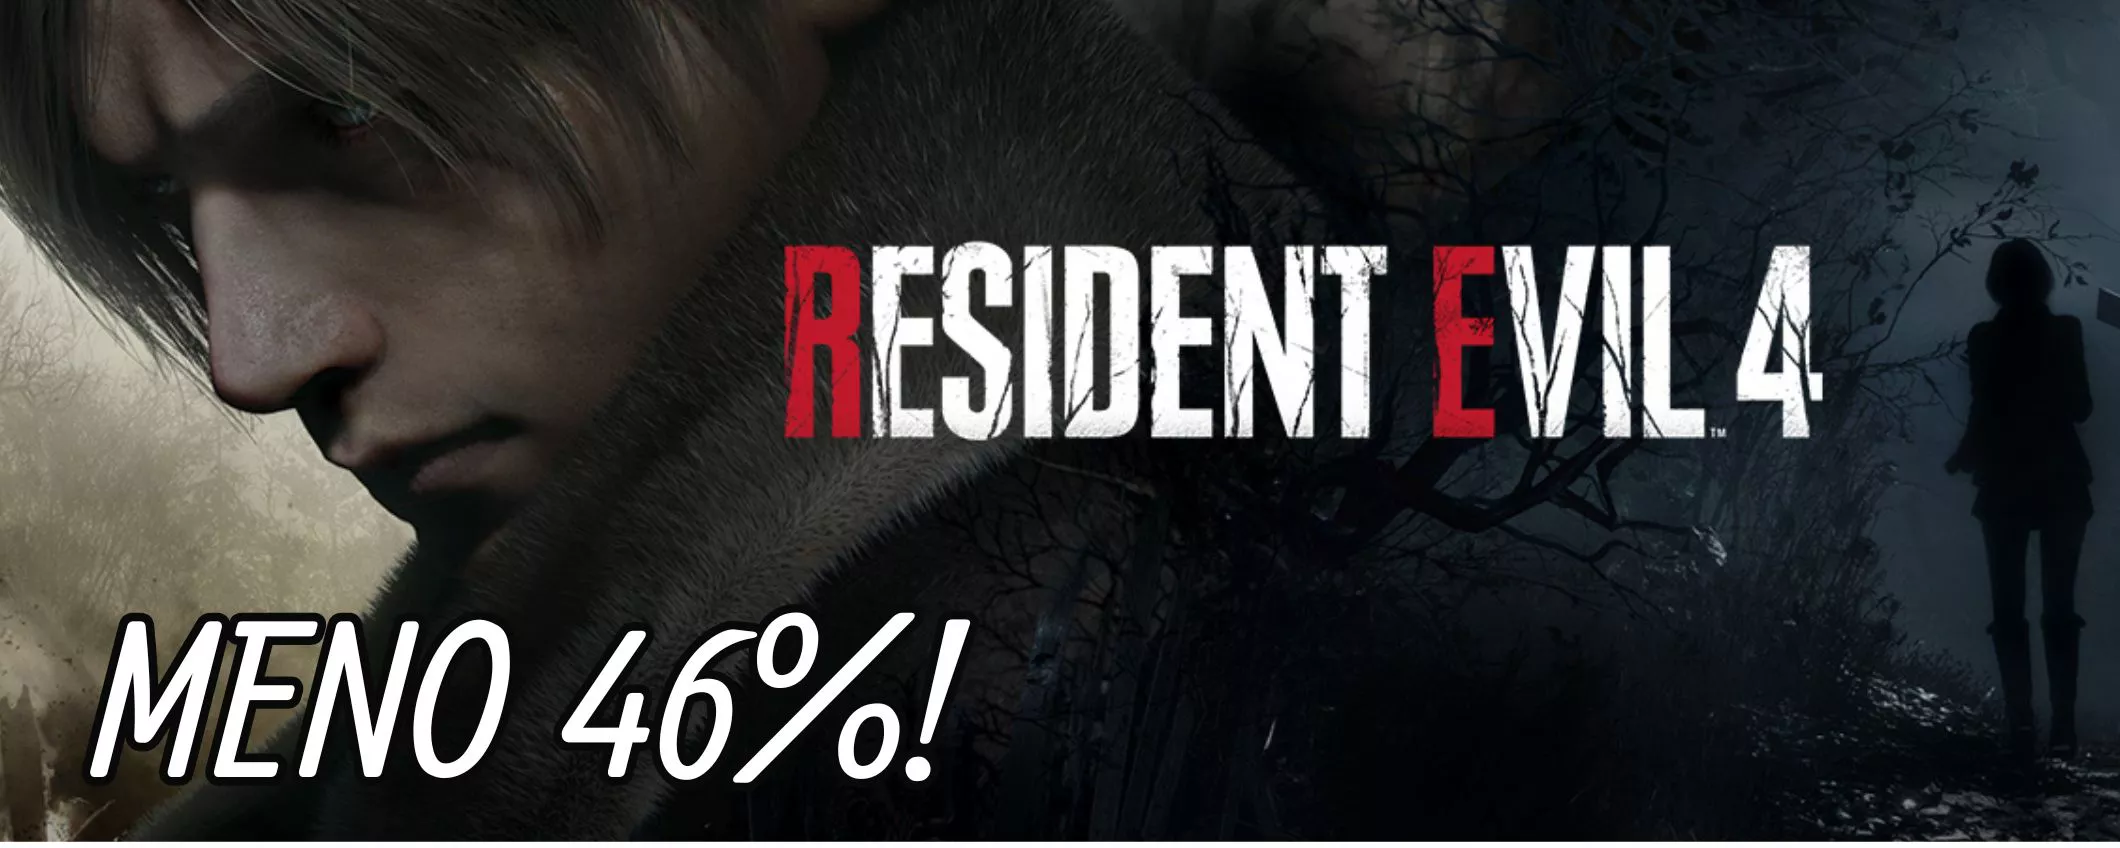 Resident Evil 4 Xbox Series X, il capolavoro horror al prezzo più basso di sempre!